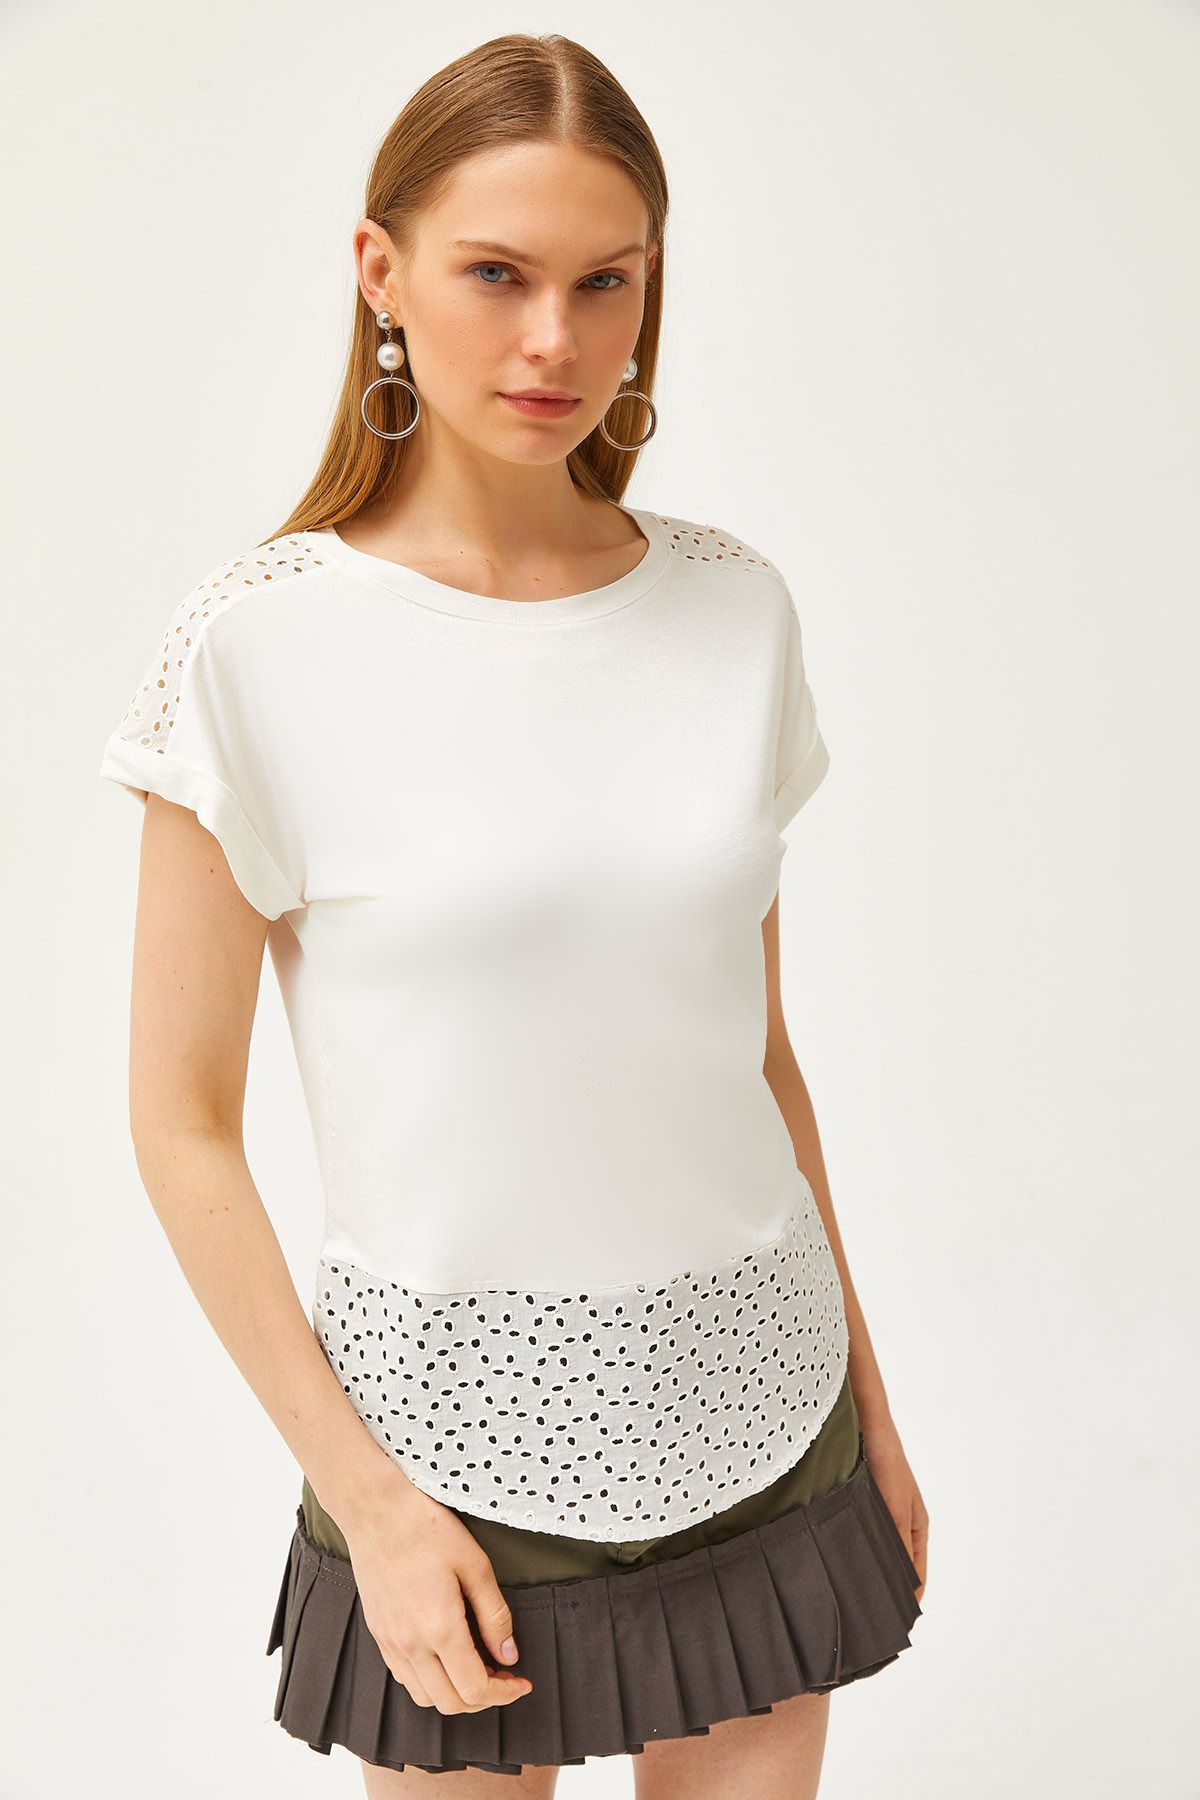 Olalook Kadın Beyaz Güpür Detaylı T-shirt TSH-19000190